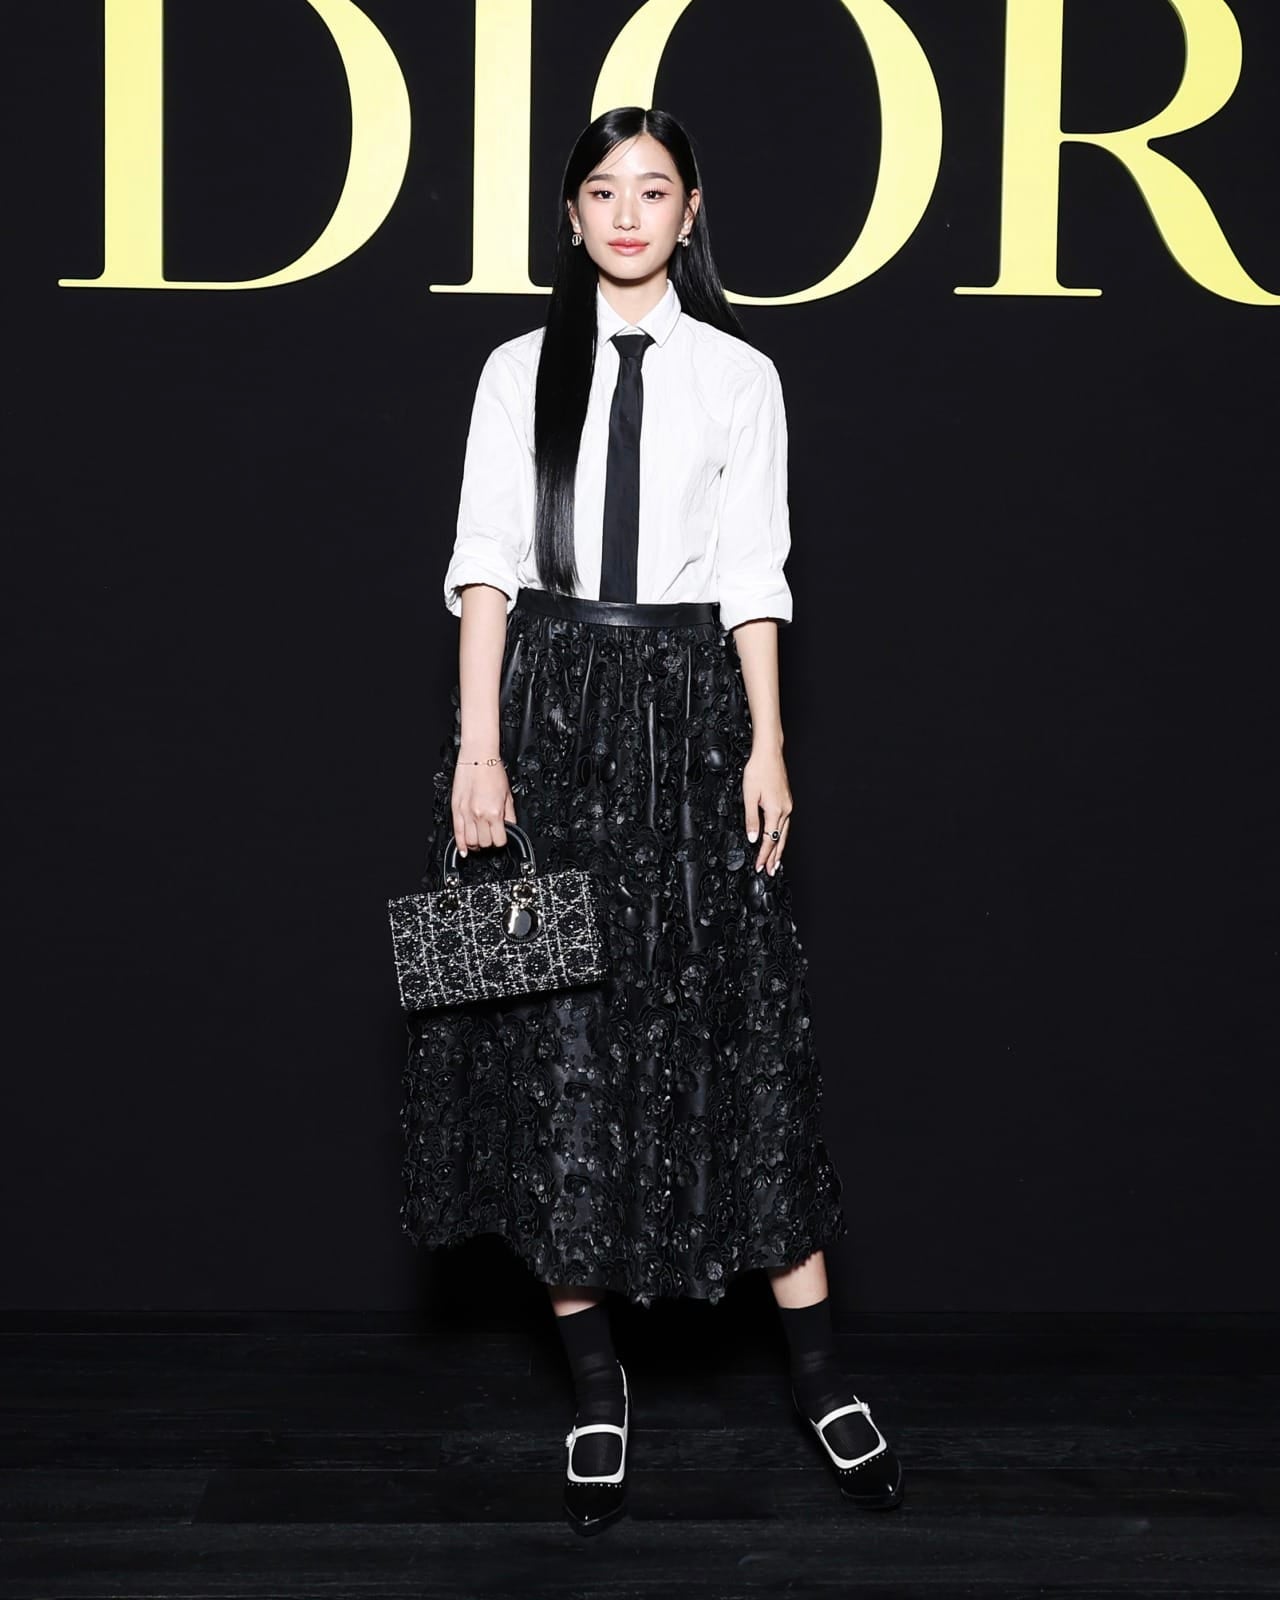 จีซู blackpink ตี๋ลี่เร่อปา ตู ต้นตะวัน งาน dior paris fashion week